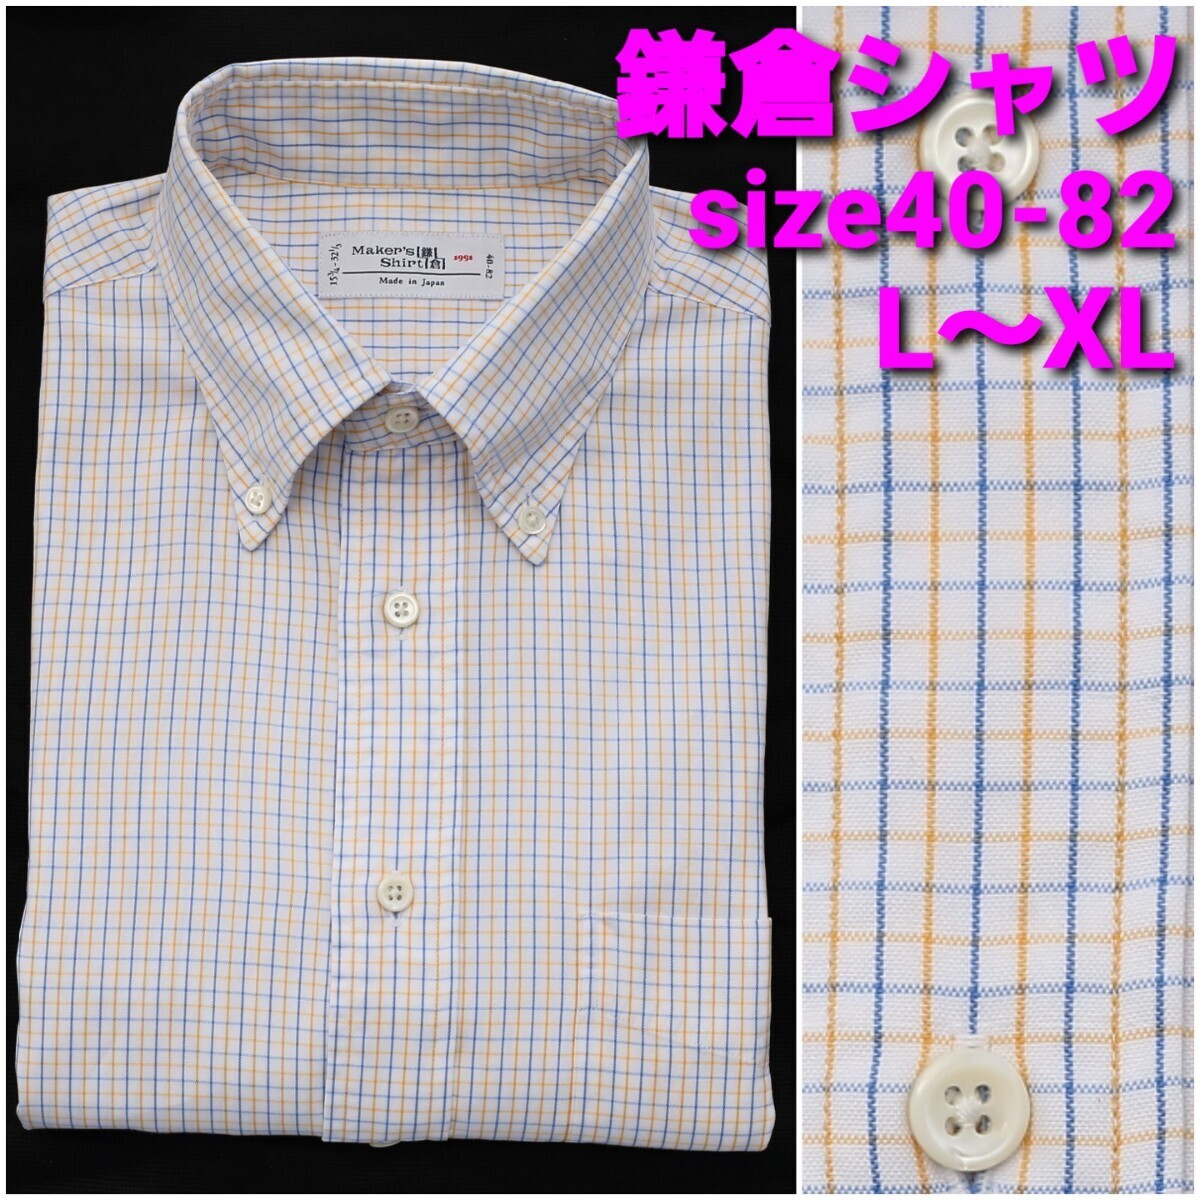 鎌倉シャツ ビジネスシャツ size40-82 メンズL～XL タッタソールチェック ボタンダウン_画像1